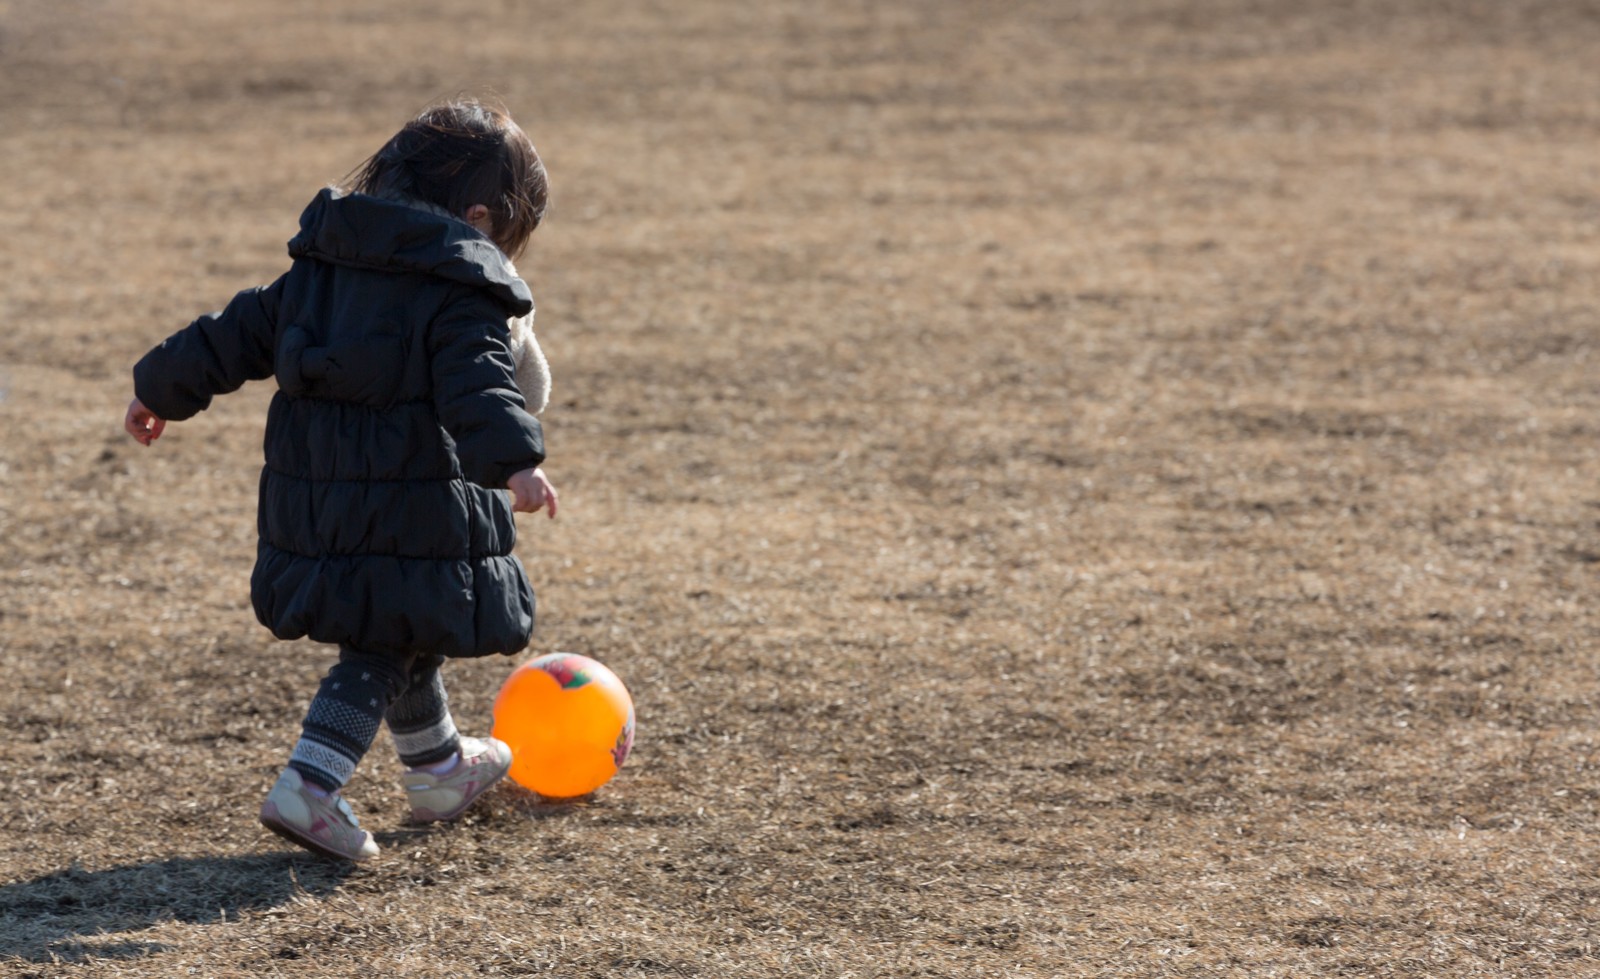 子どもが外遊びする時間は「減少した」が92.0%！ 保護者対象、外遊びに関する調査レポート